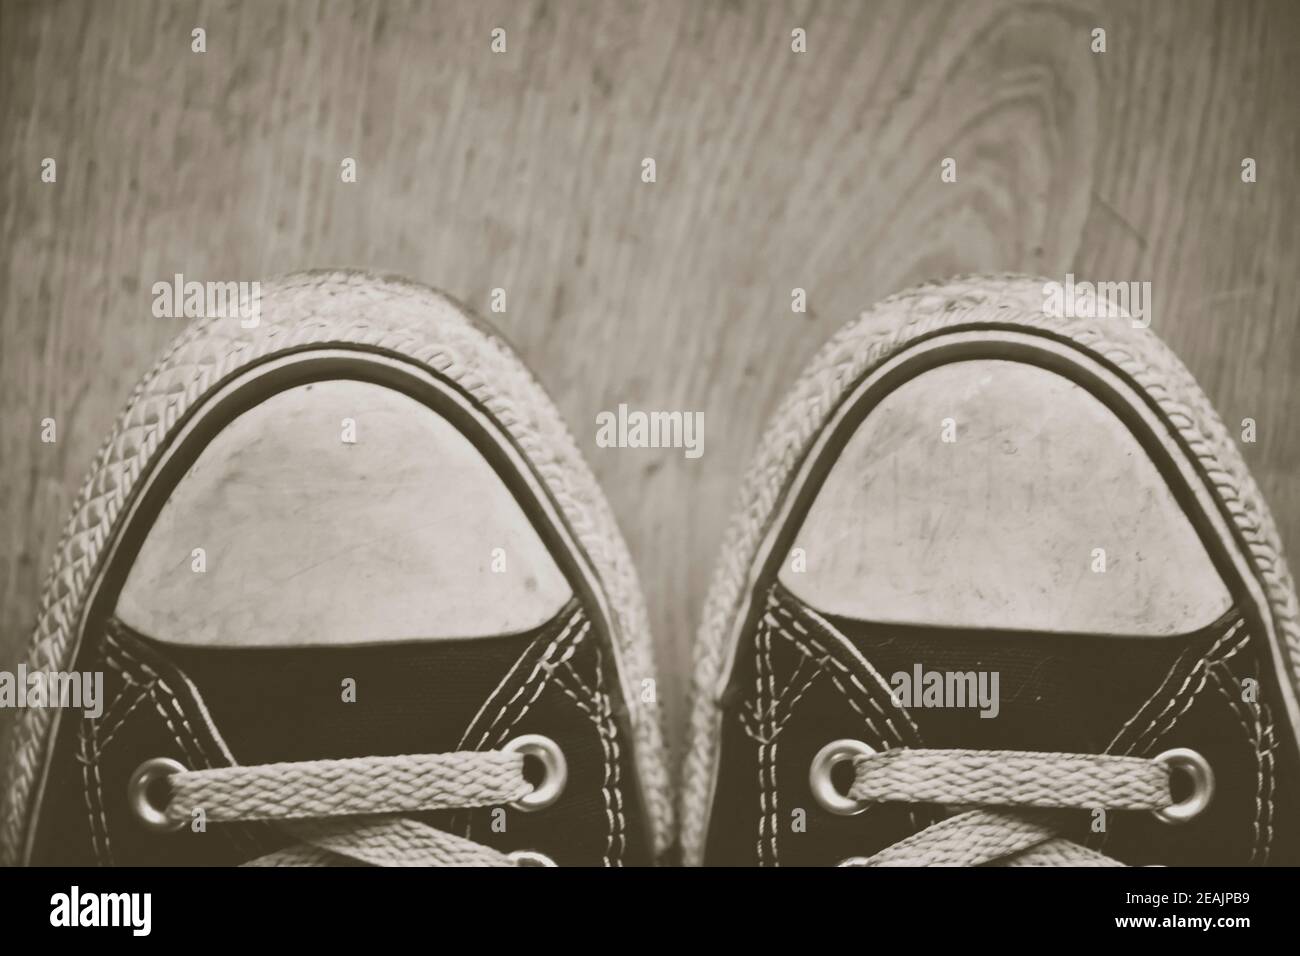 orn out converse Chuck Taylor punte per sneakers All-Star, con tessuto nero, su pavimento in legno. Modifica creativa. Foto Stock